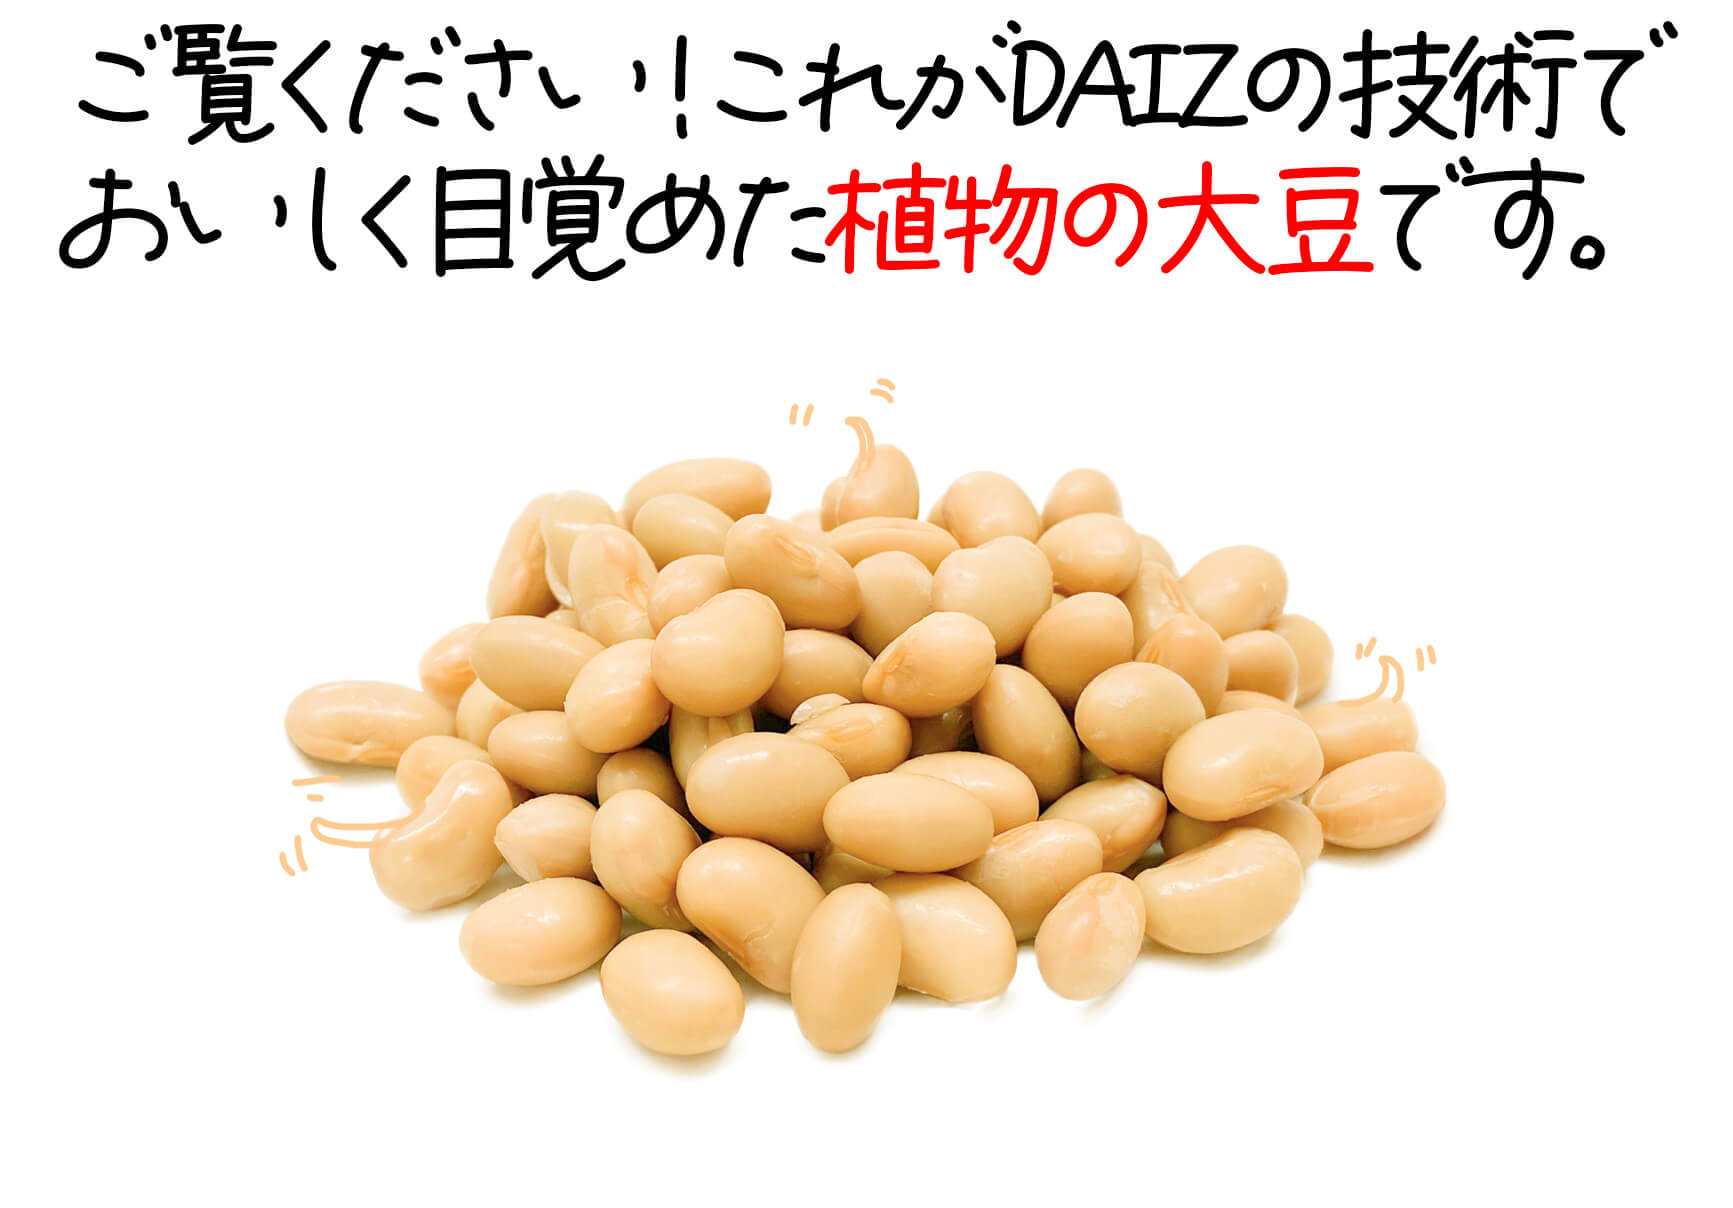 ご覧ください！これがDAIZの技術で目覚めた植物の大豆です。